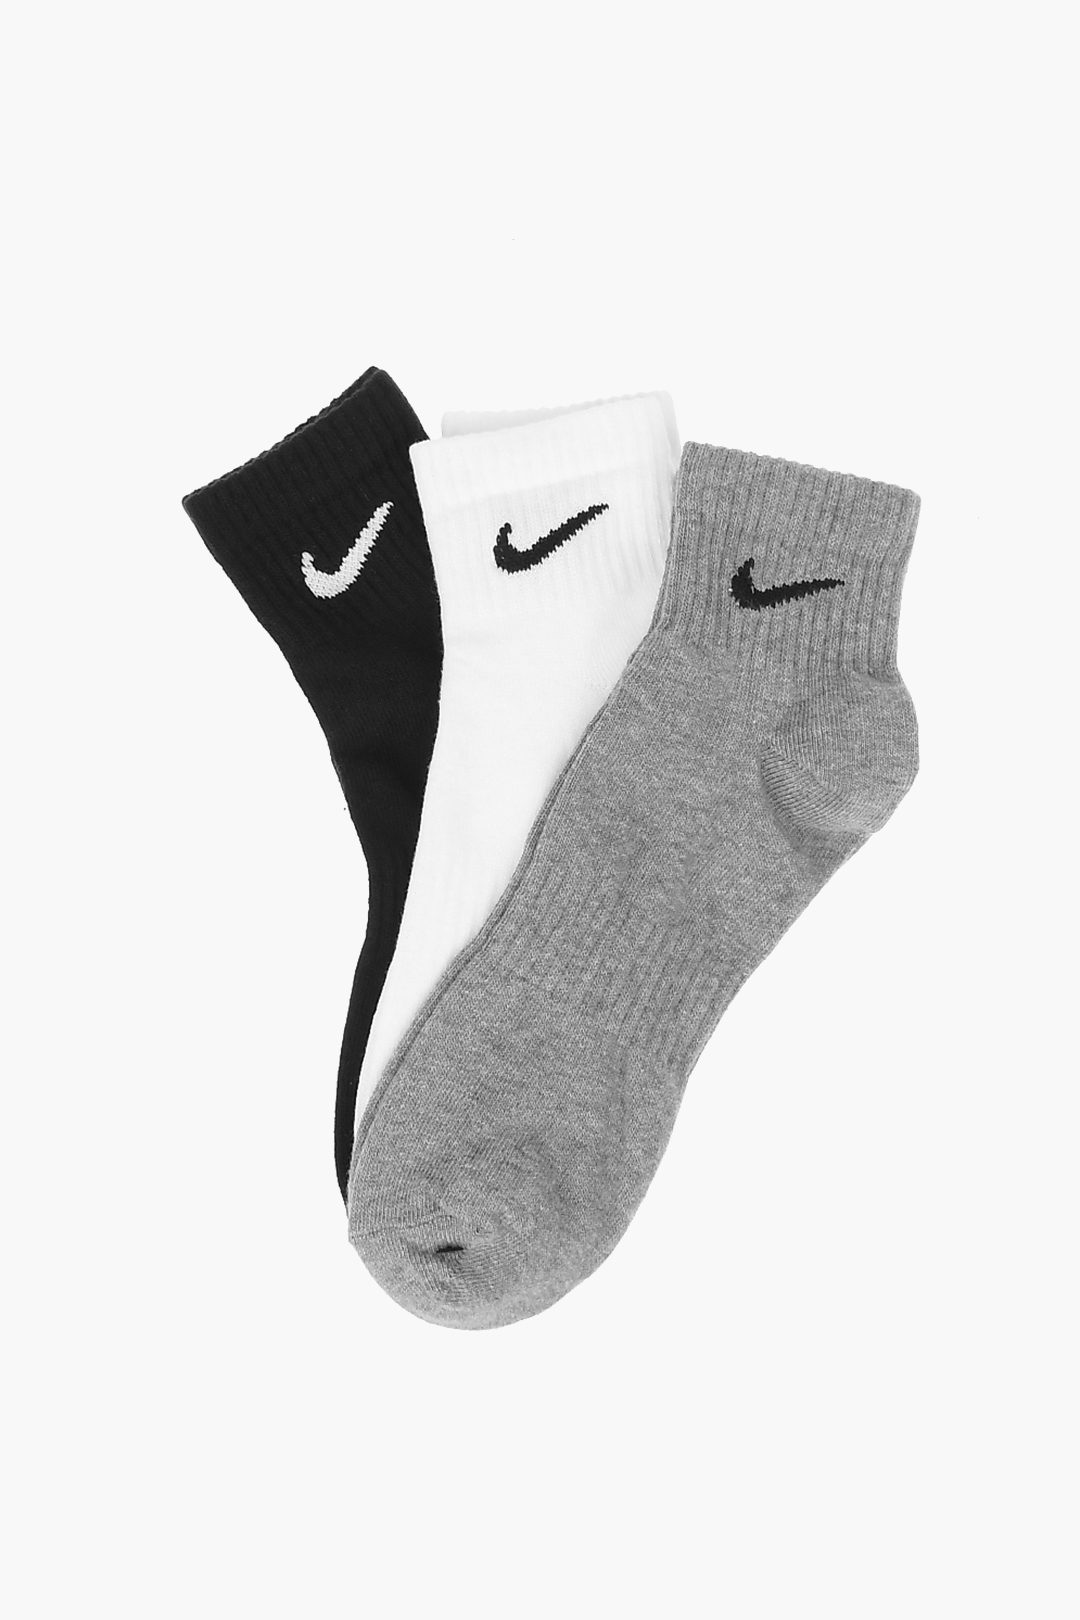 Nike Set 3 of Socks unisex women - Glamood Outlet